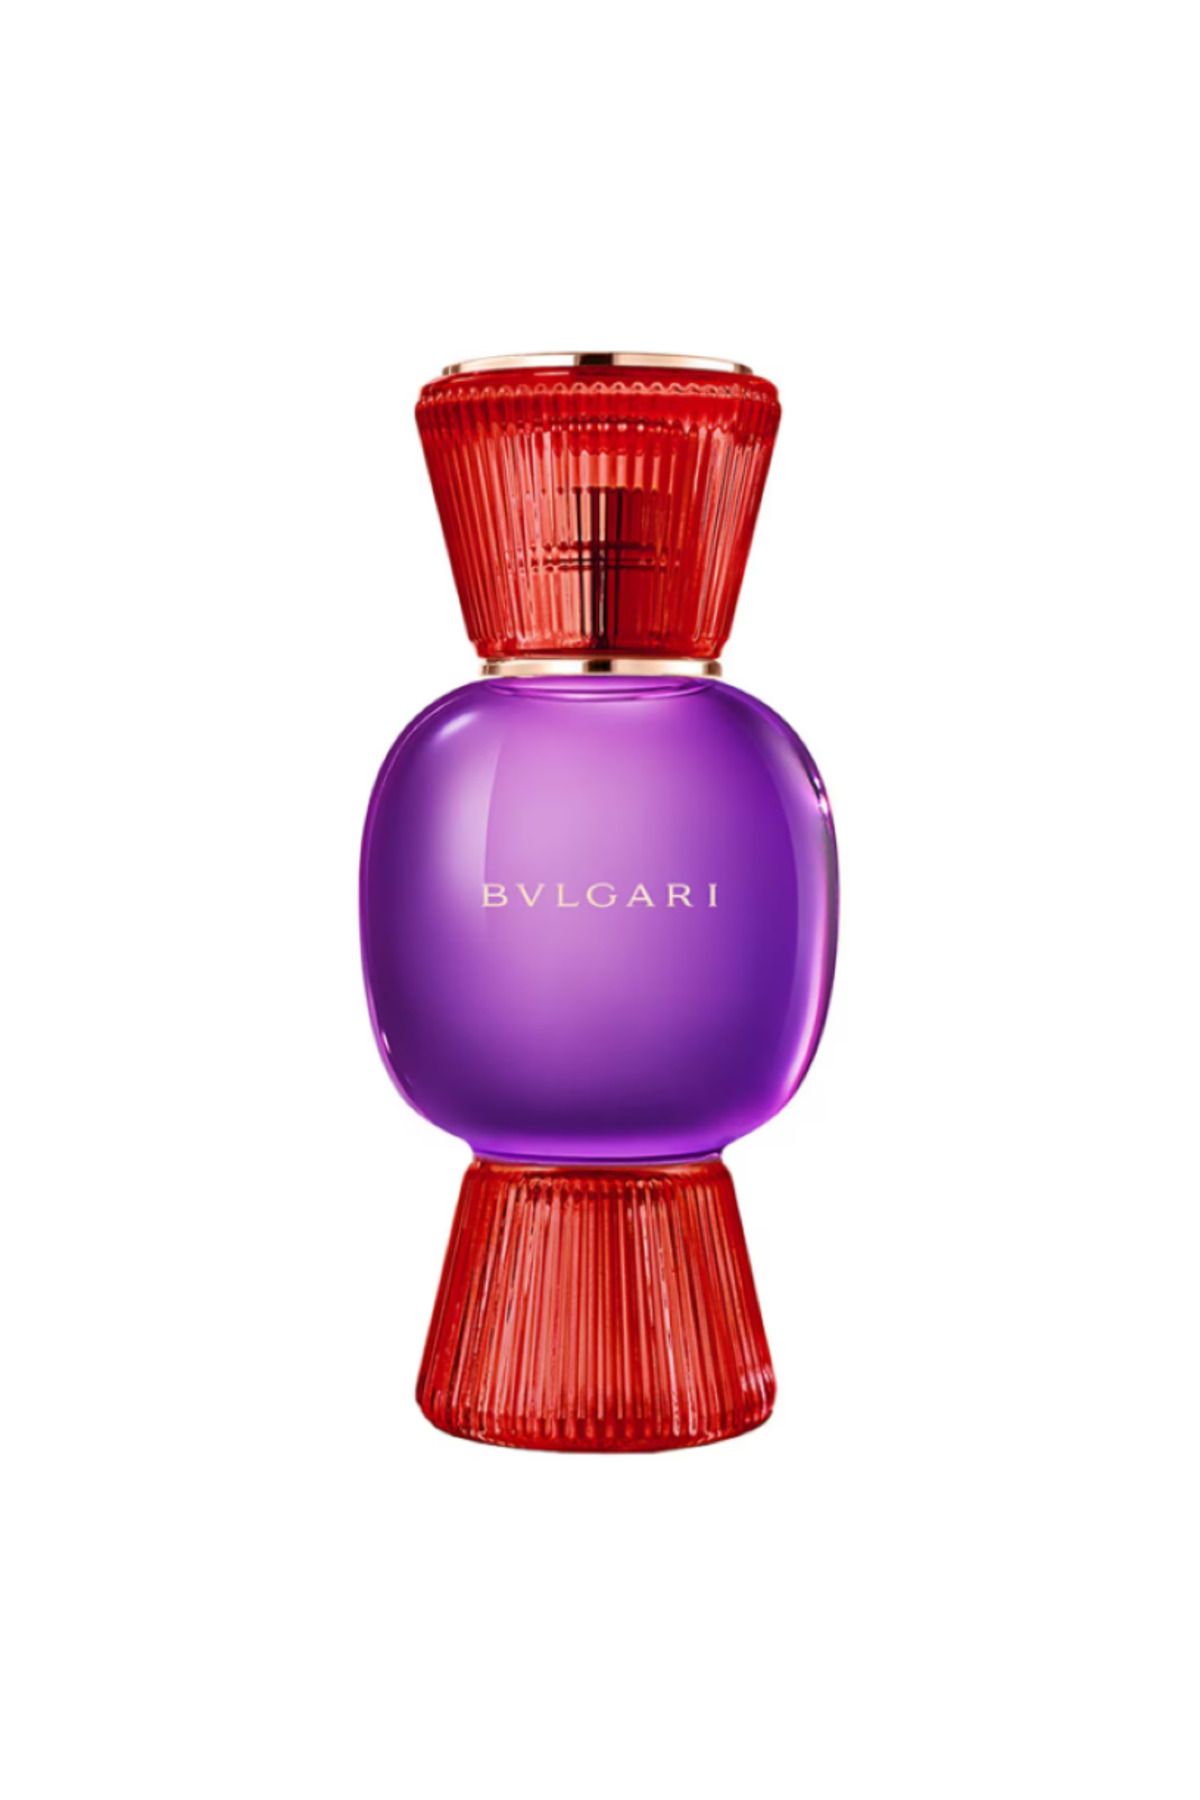 Bvlgari Allegra Fantasia Veneta - Eau de Parfum “Tüm İtalyan sofistikeliği tek bir parfümde. ”100 ML